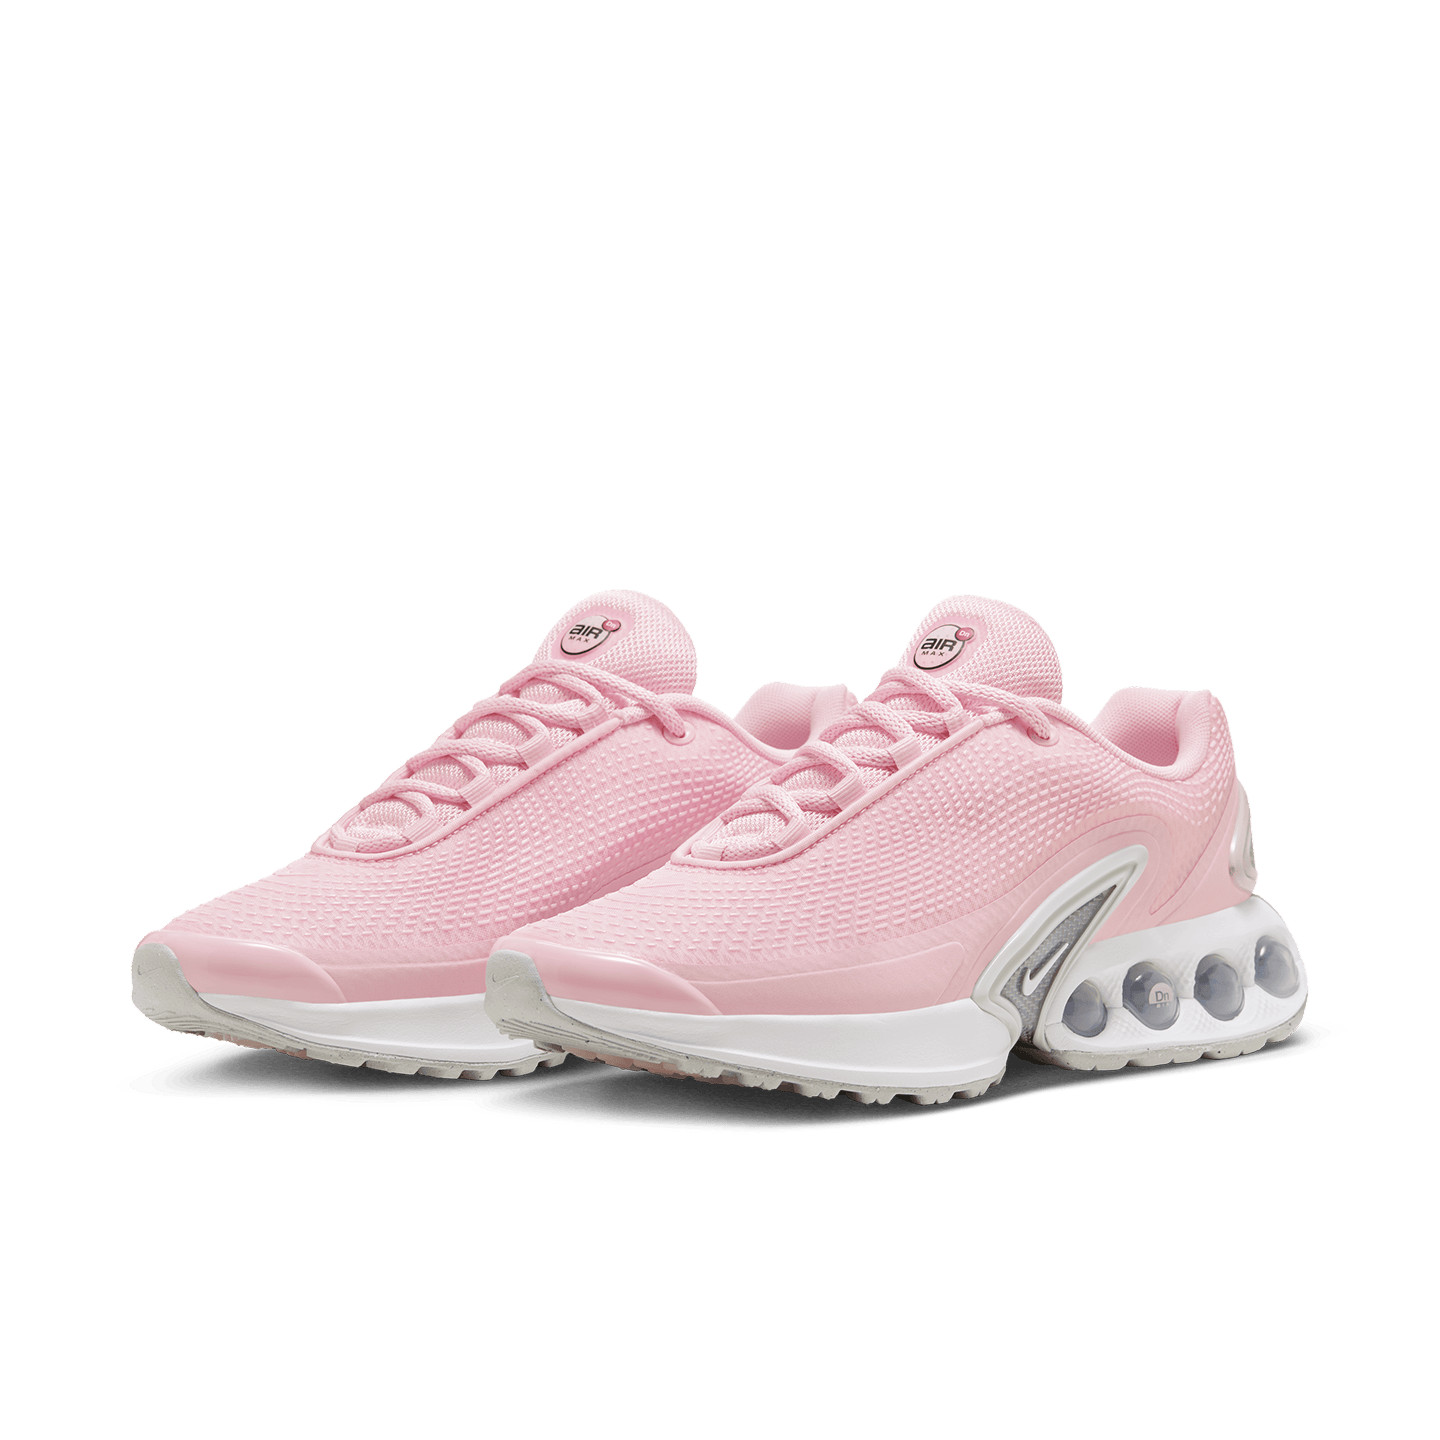 Shoe model in Pink Foam color